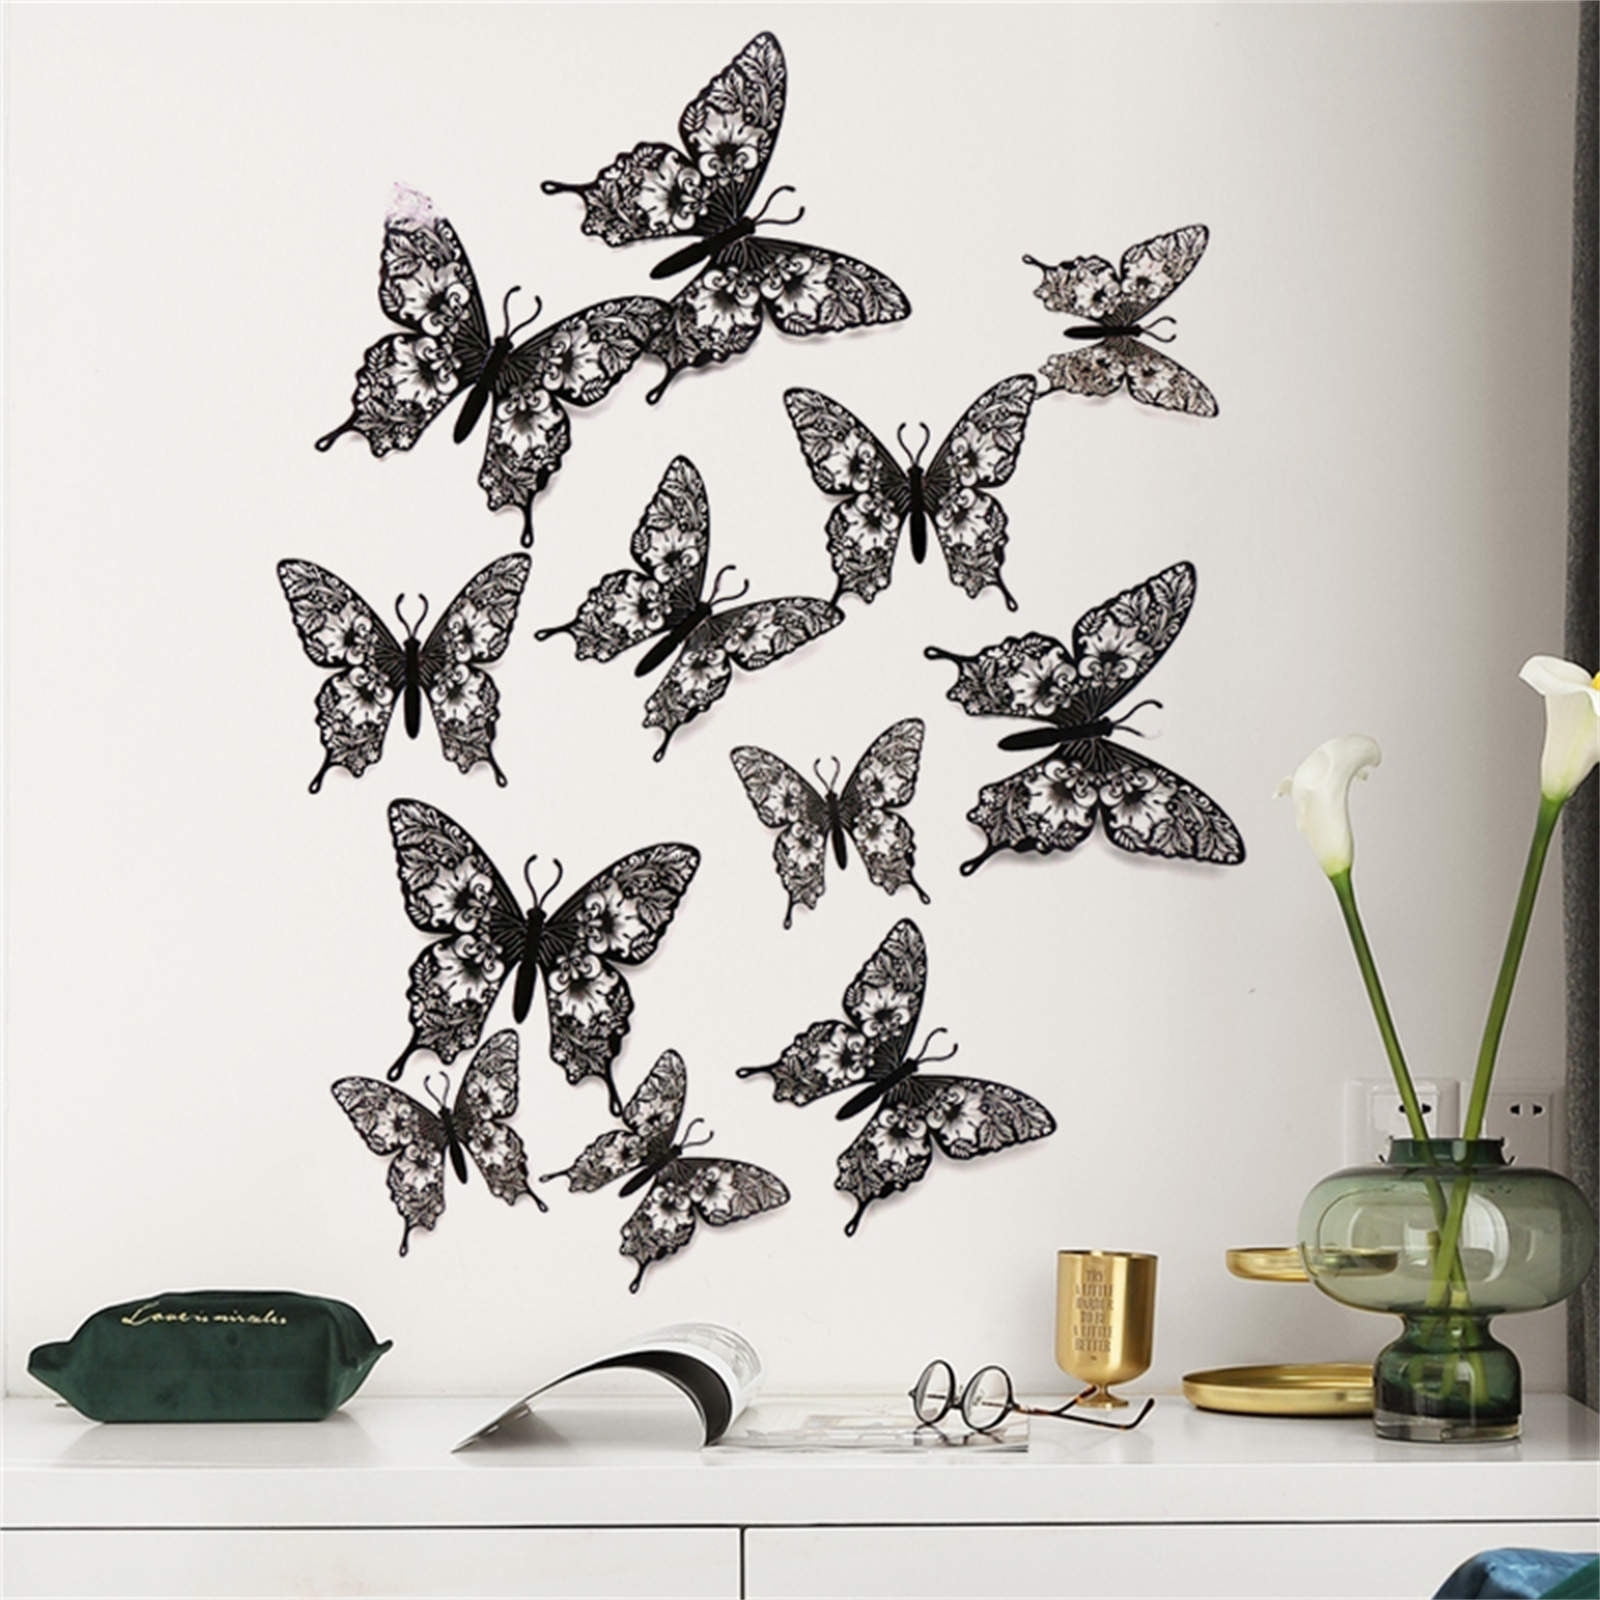 12pc butterfly  Nursery decor butterfly wall decor butterfly die cuts